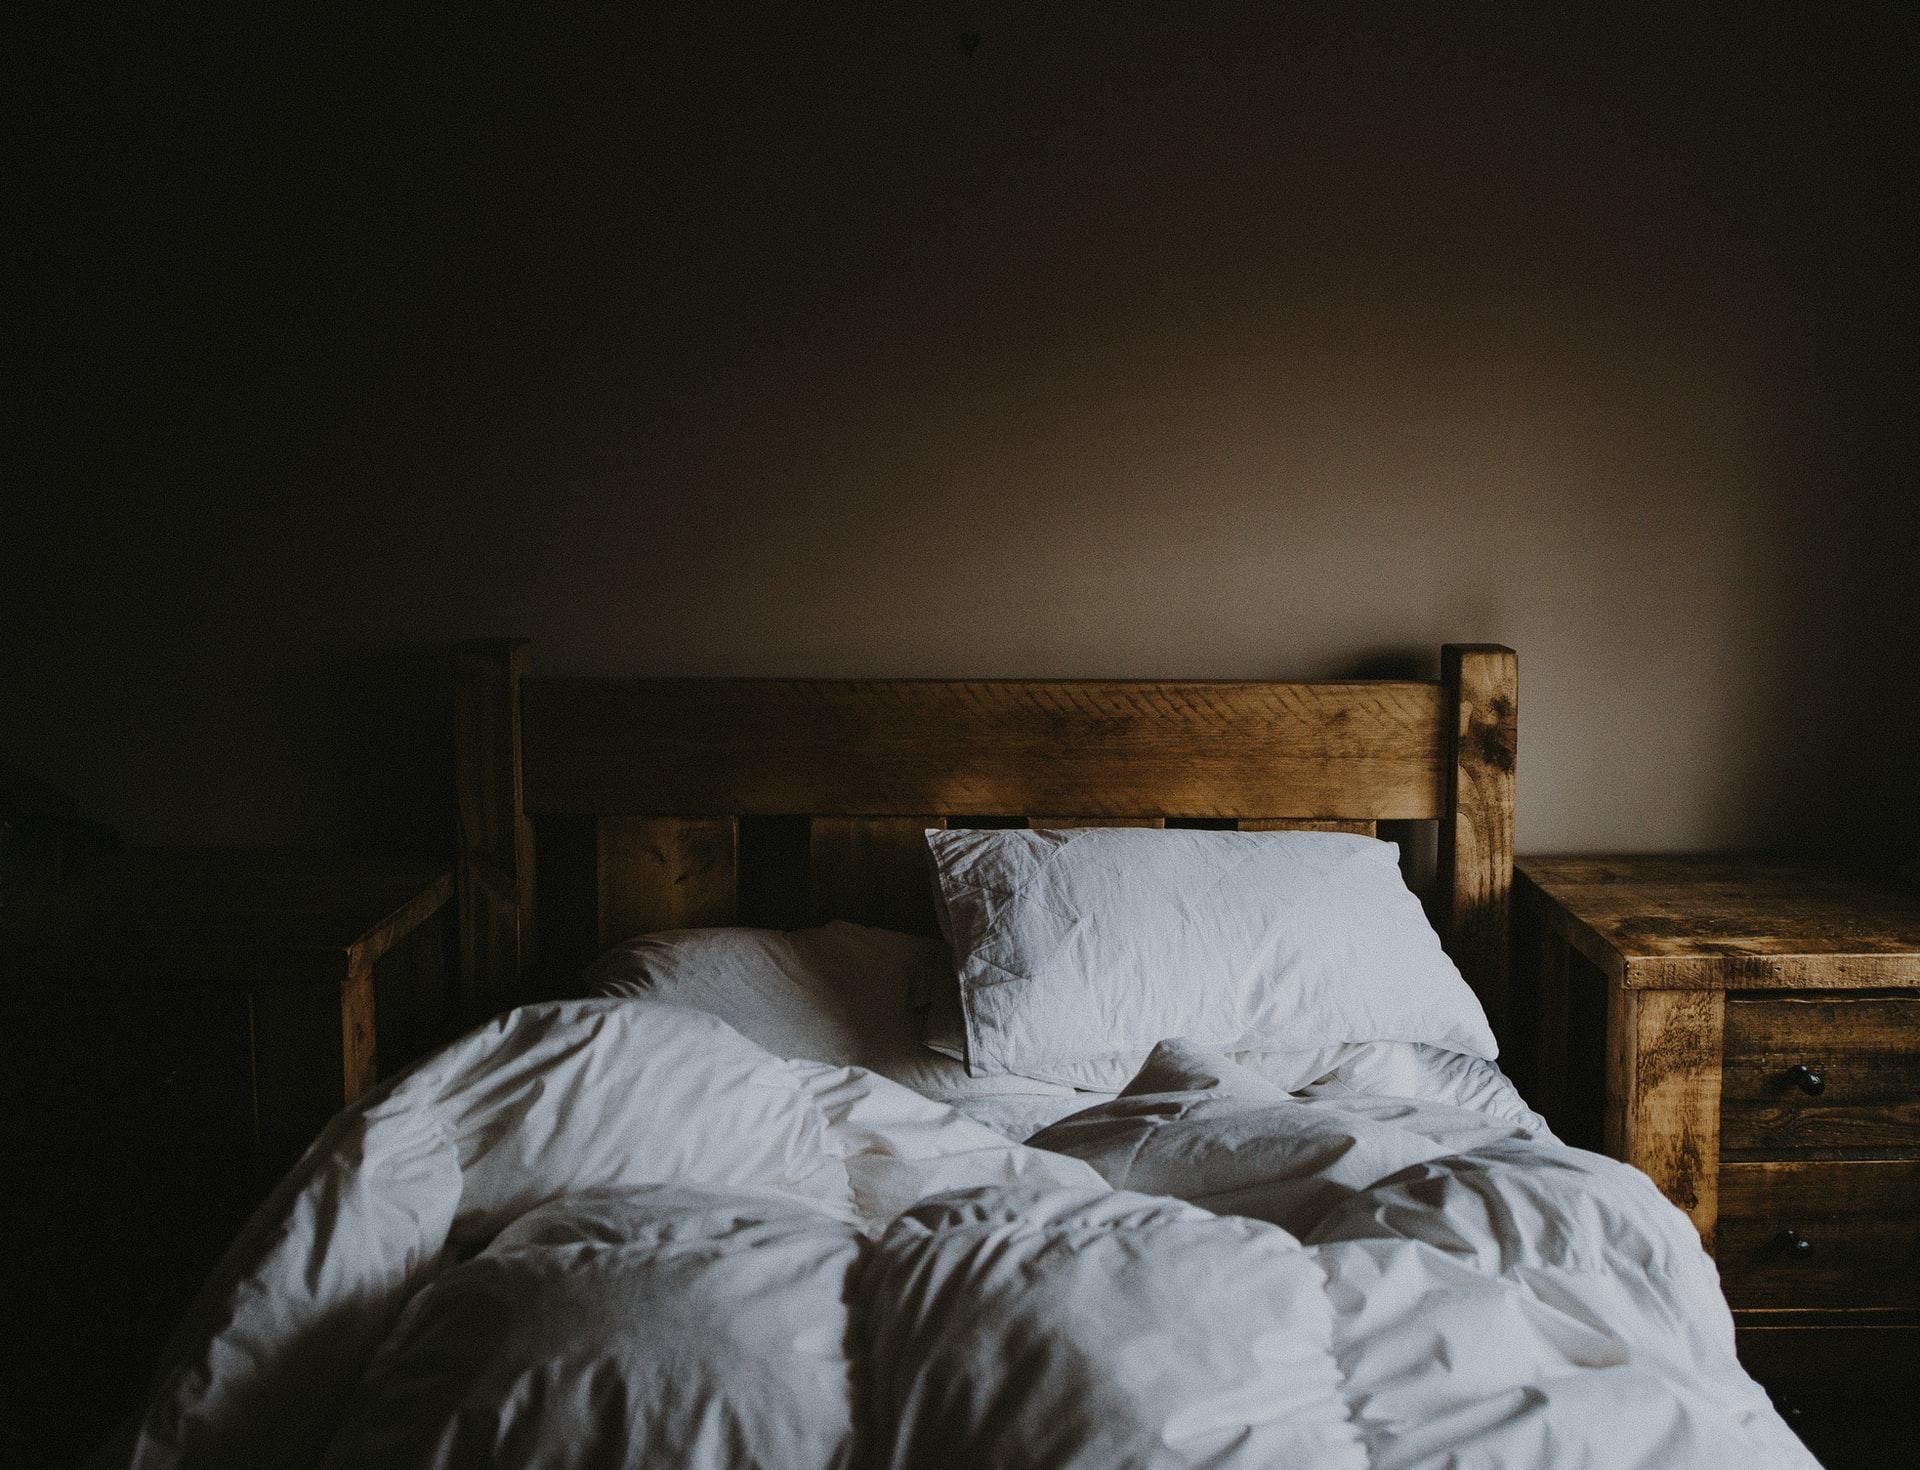 Кровать больше не подведет: как заниматься сексом и не разбудить родных - Men